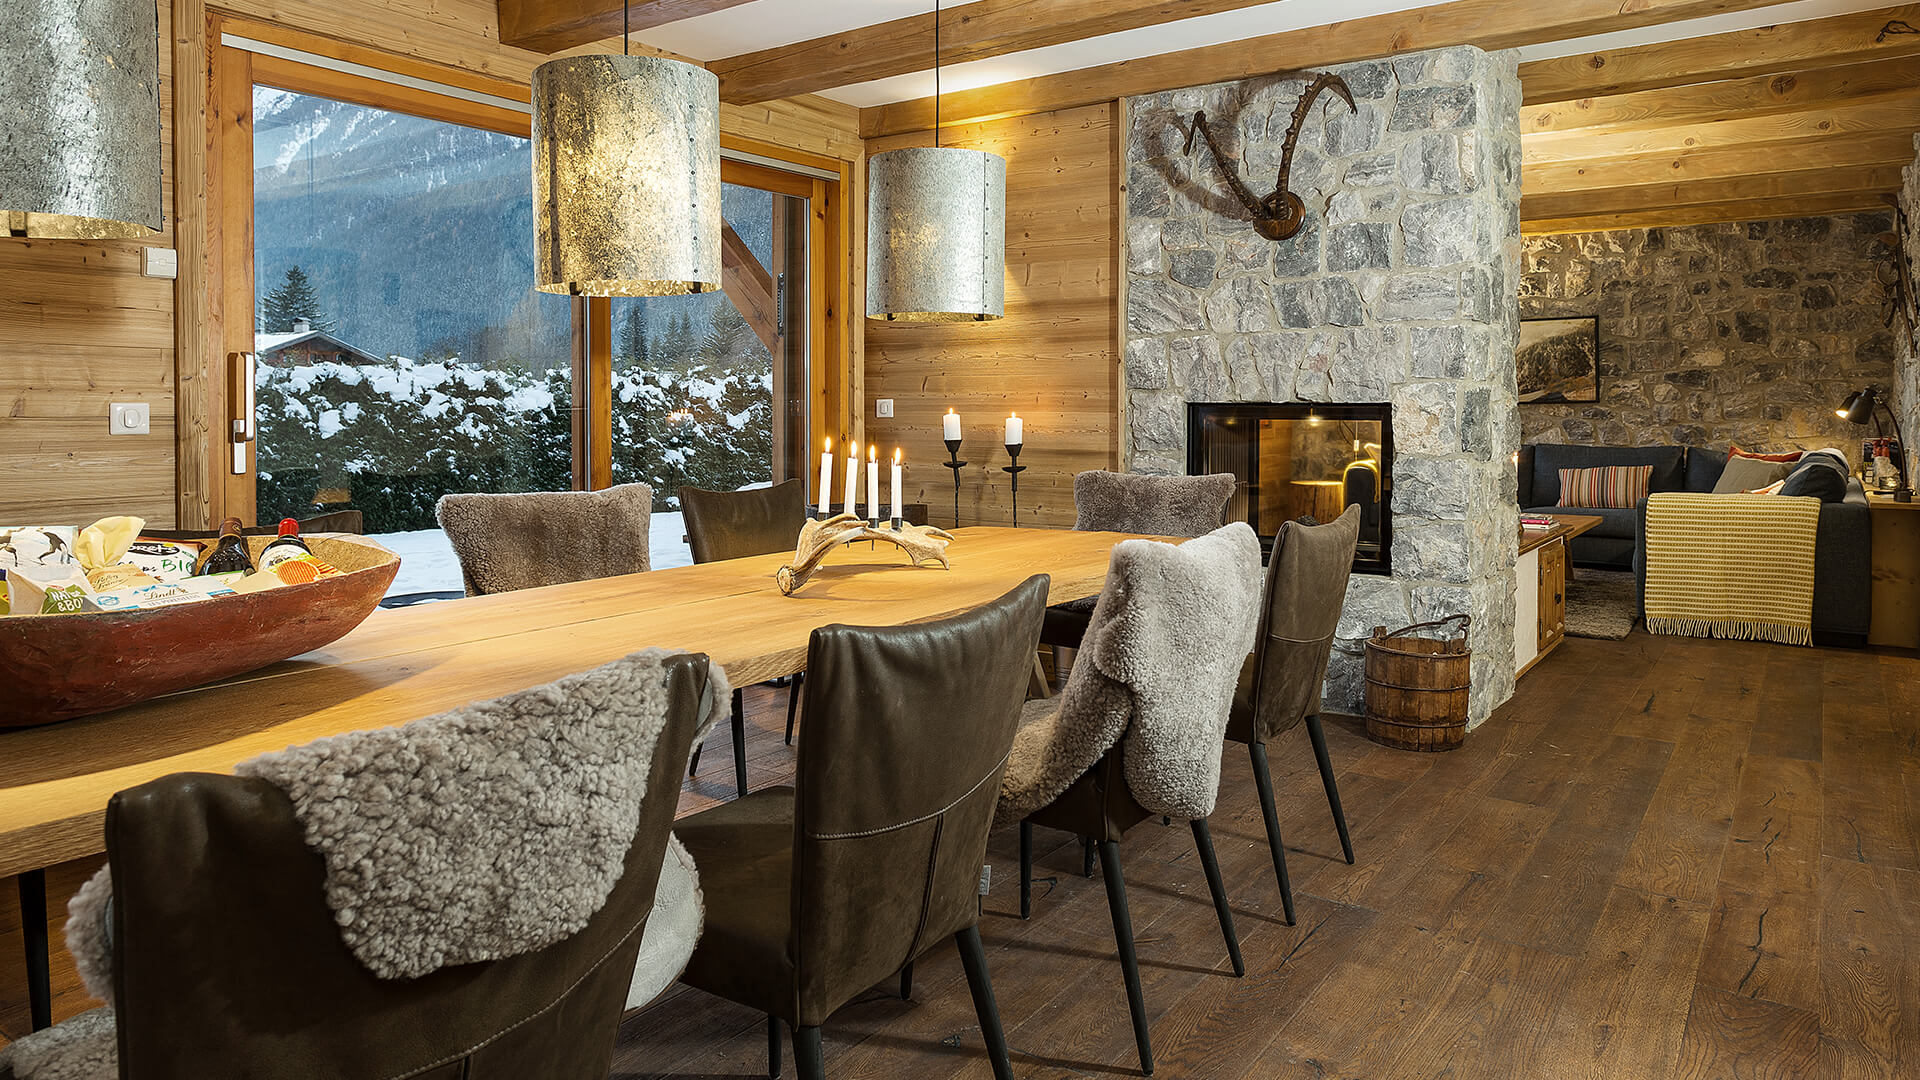 Chamonix inspireret spisestue fra feriebolig med sten, træ og skind